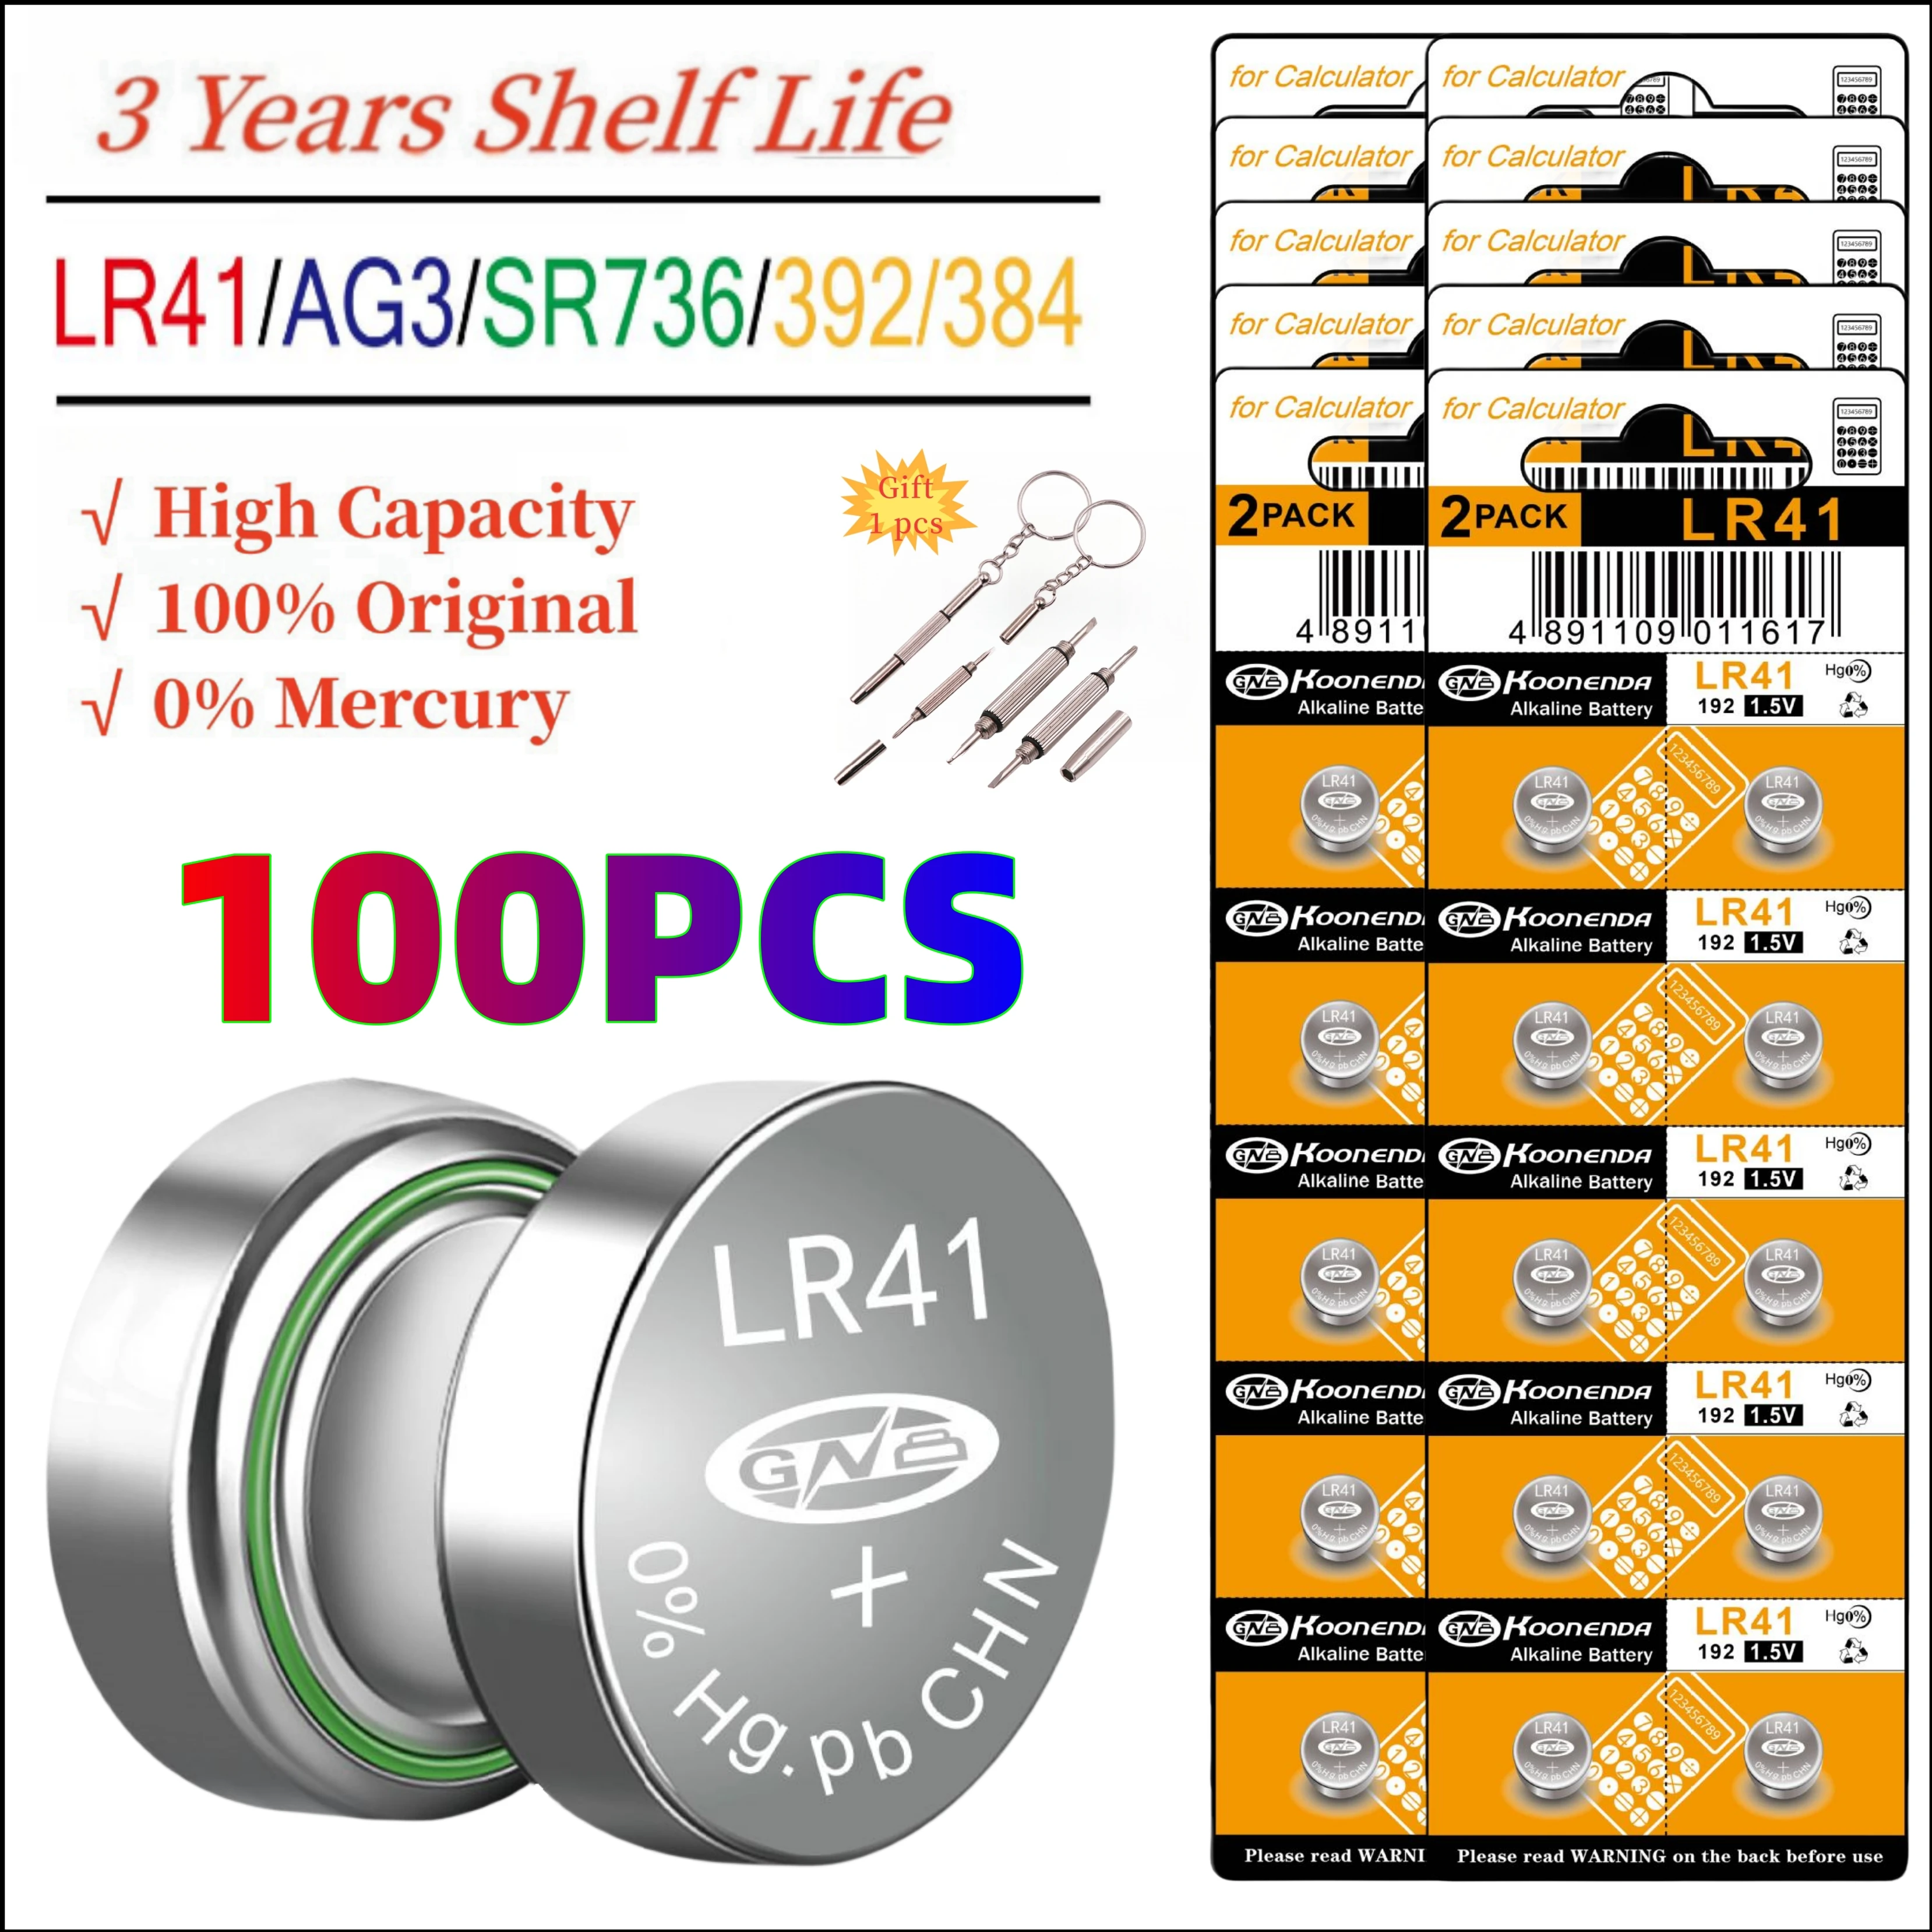 

Батарейки кнопочные LR41 ag3, 100 в, 1,5 шт., эквивалентные батареям идеально подходят для термометров, часов, лазерных указок, мелких игрушек и т. д.